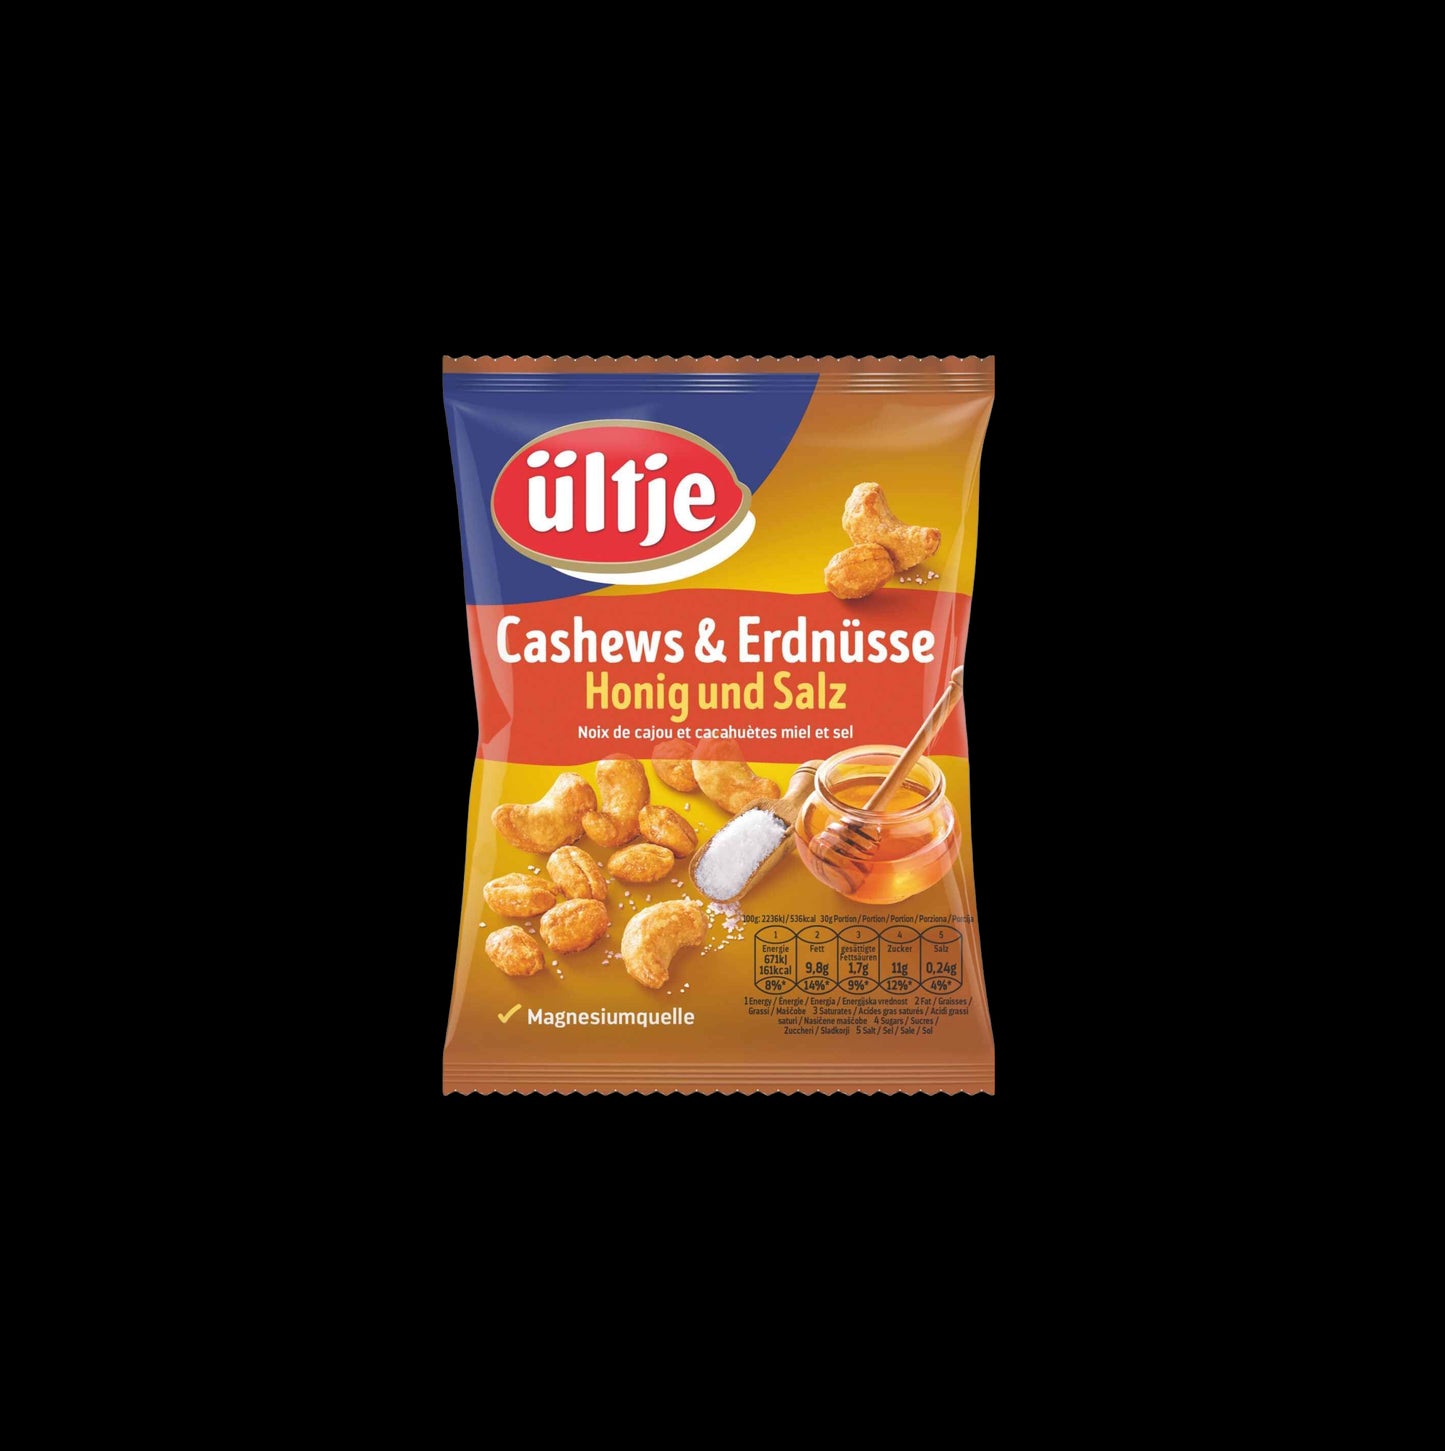 ültje Cashews & Erdnüsse Honig und Salz 200g